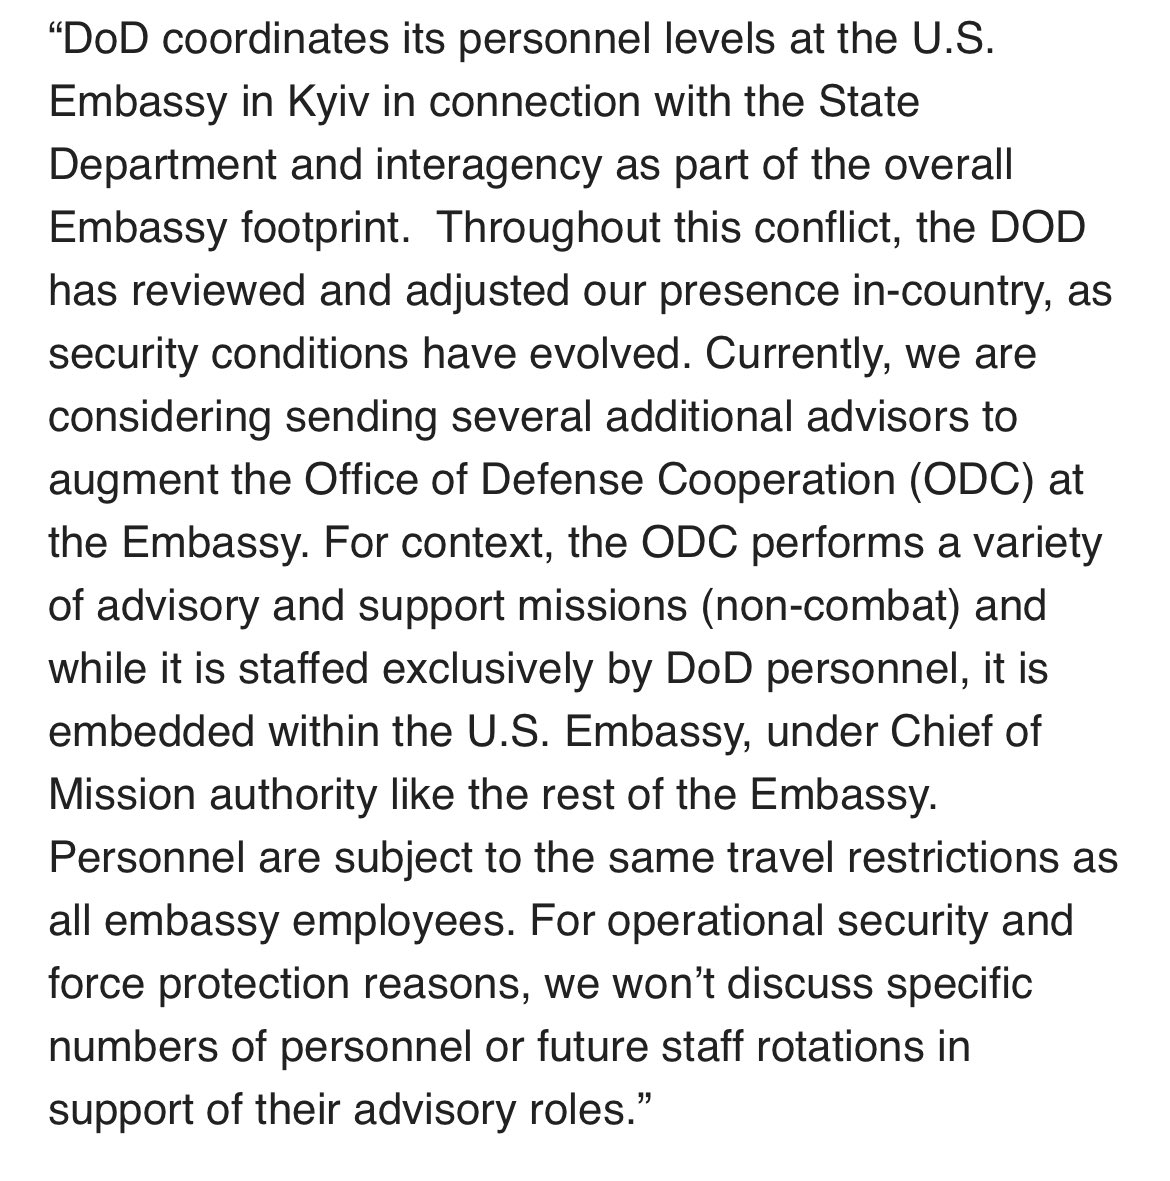 美国可能会向乌克兰派遣更多军队，作为驻扎在大使馆的顾问，而不是参与战斗。@PentagonPresSec 向美国之音表示：目前，我们正在考虑派遣几名额外顾问来增强大使馆的国防合作办公室。为提供咨询和支持